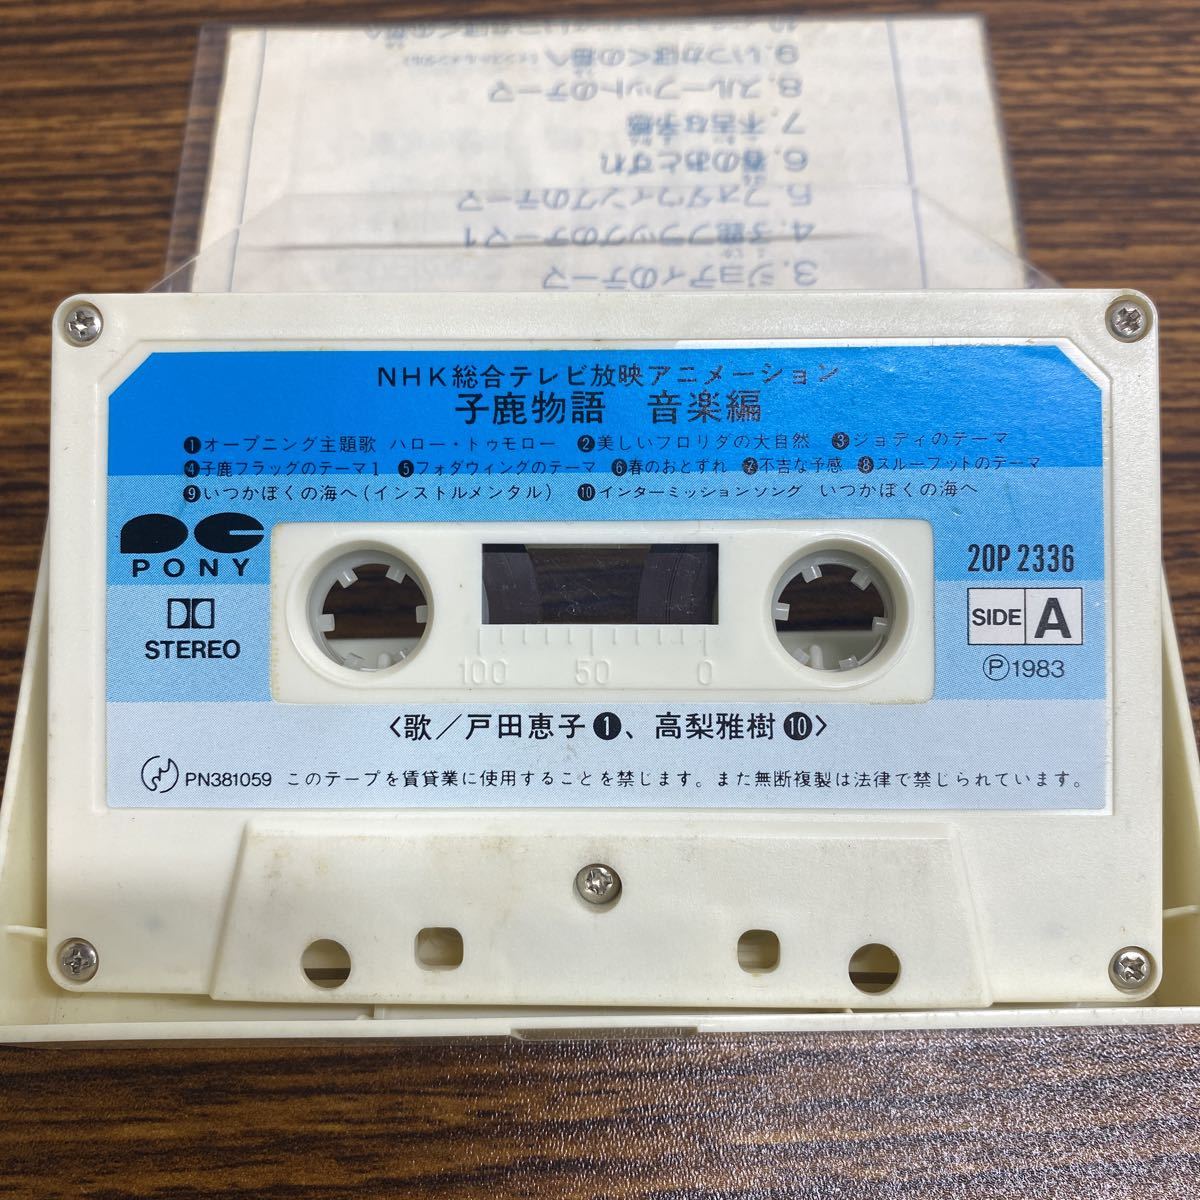 . олень история музыка сборник NHK обобщенный телевизор телевещание анимация кассетная лента 